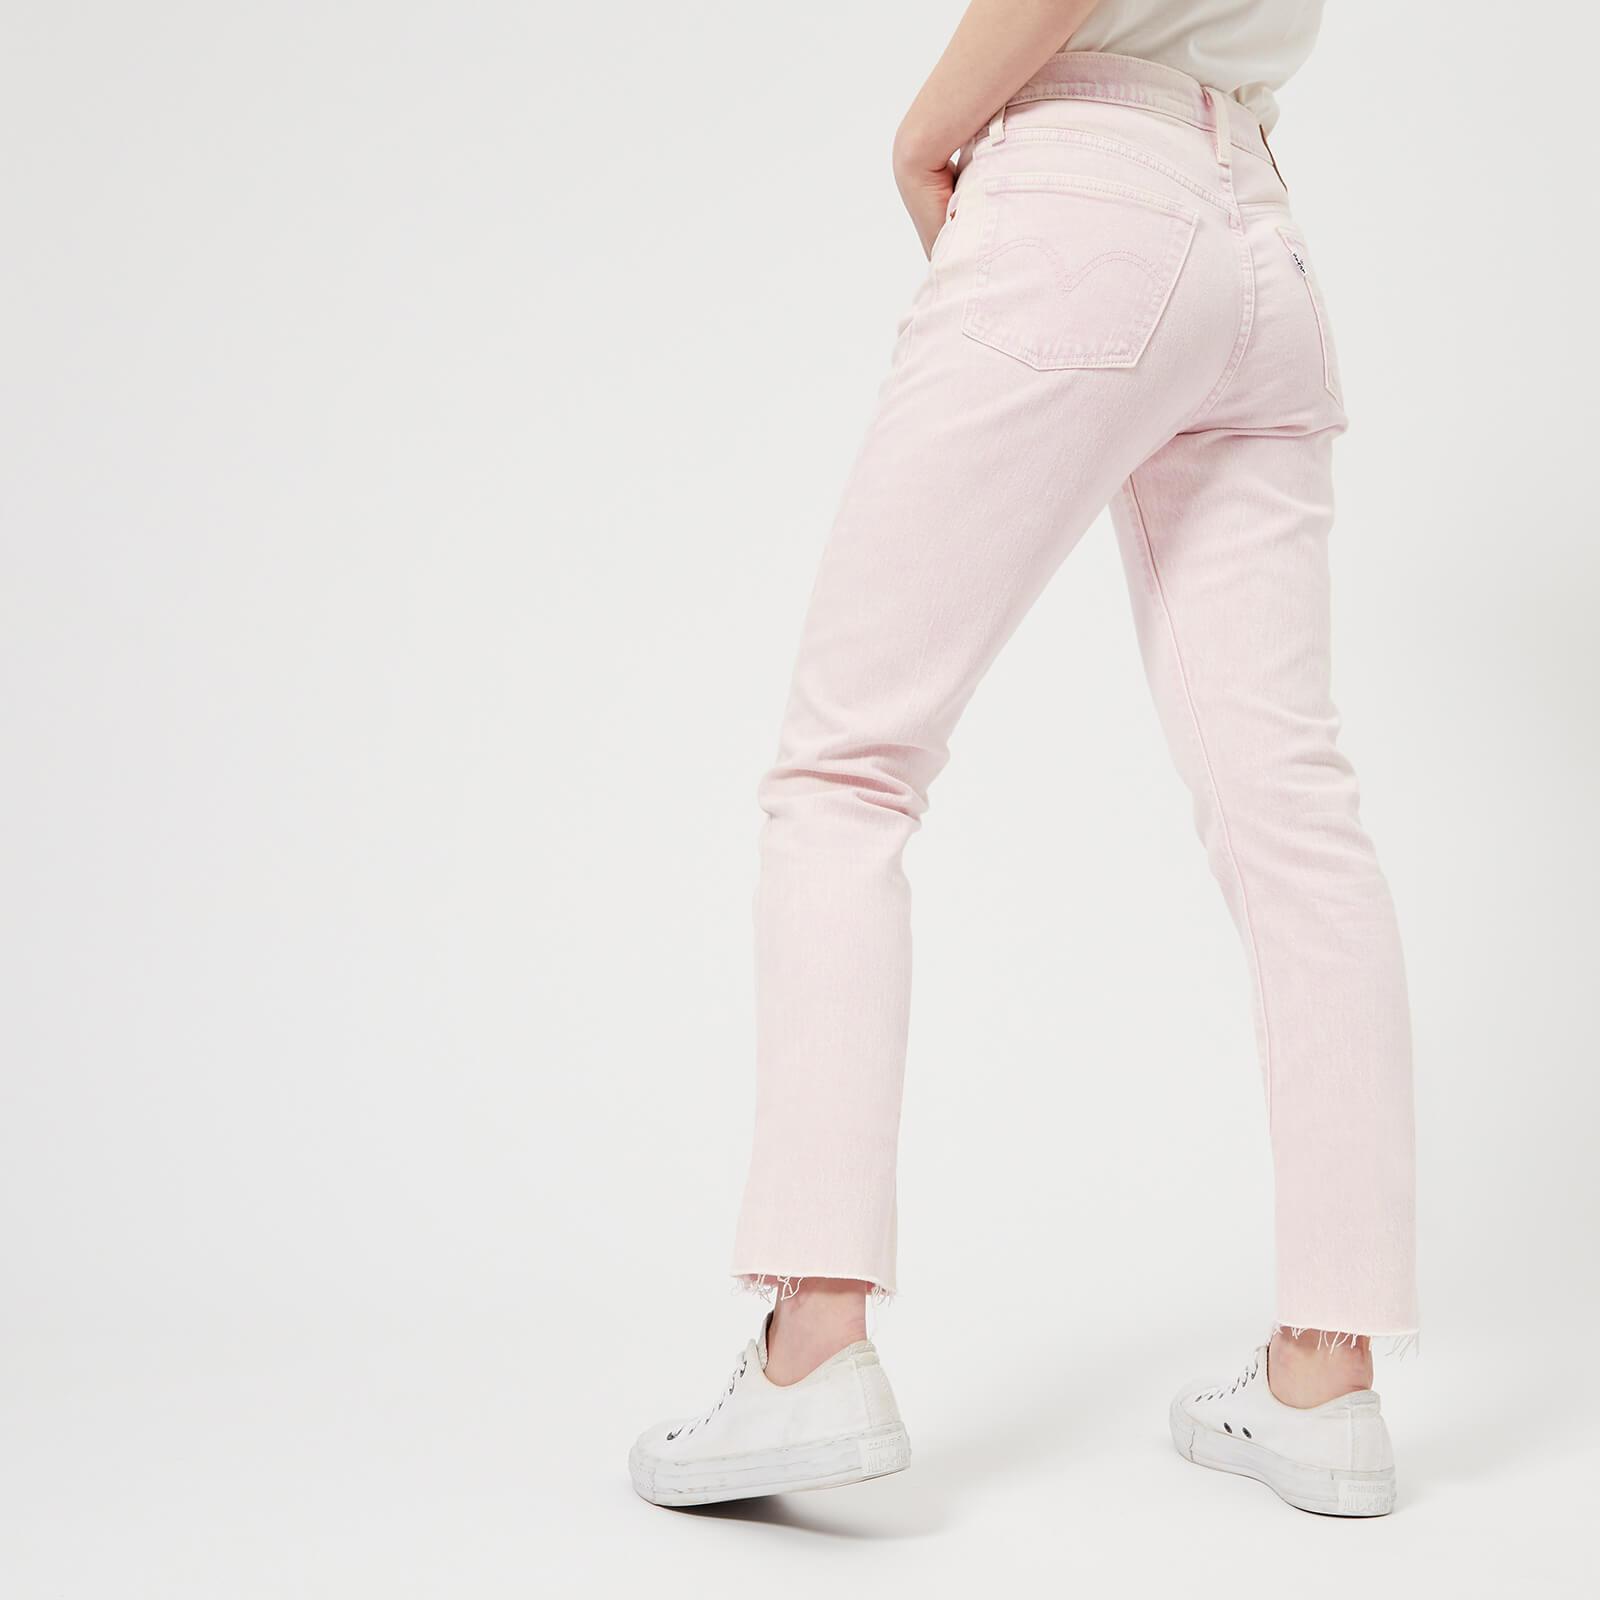 baden Vergissing Meesterschap Levi's 501 Skinny Jeans in Pink | Lyst Canada